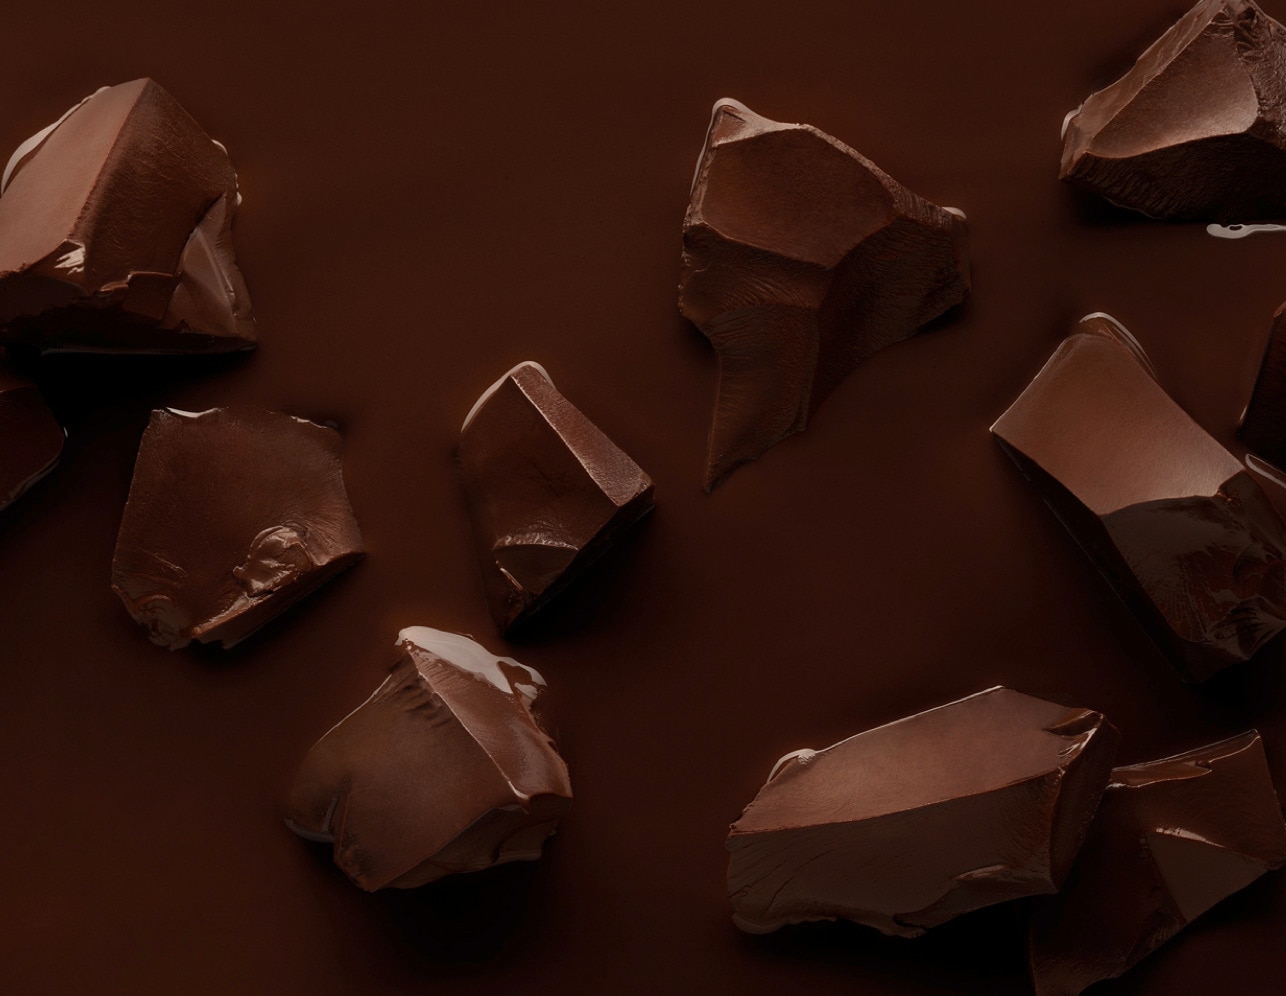 Magnum Chocolate